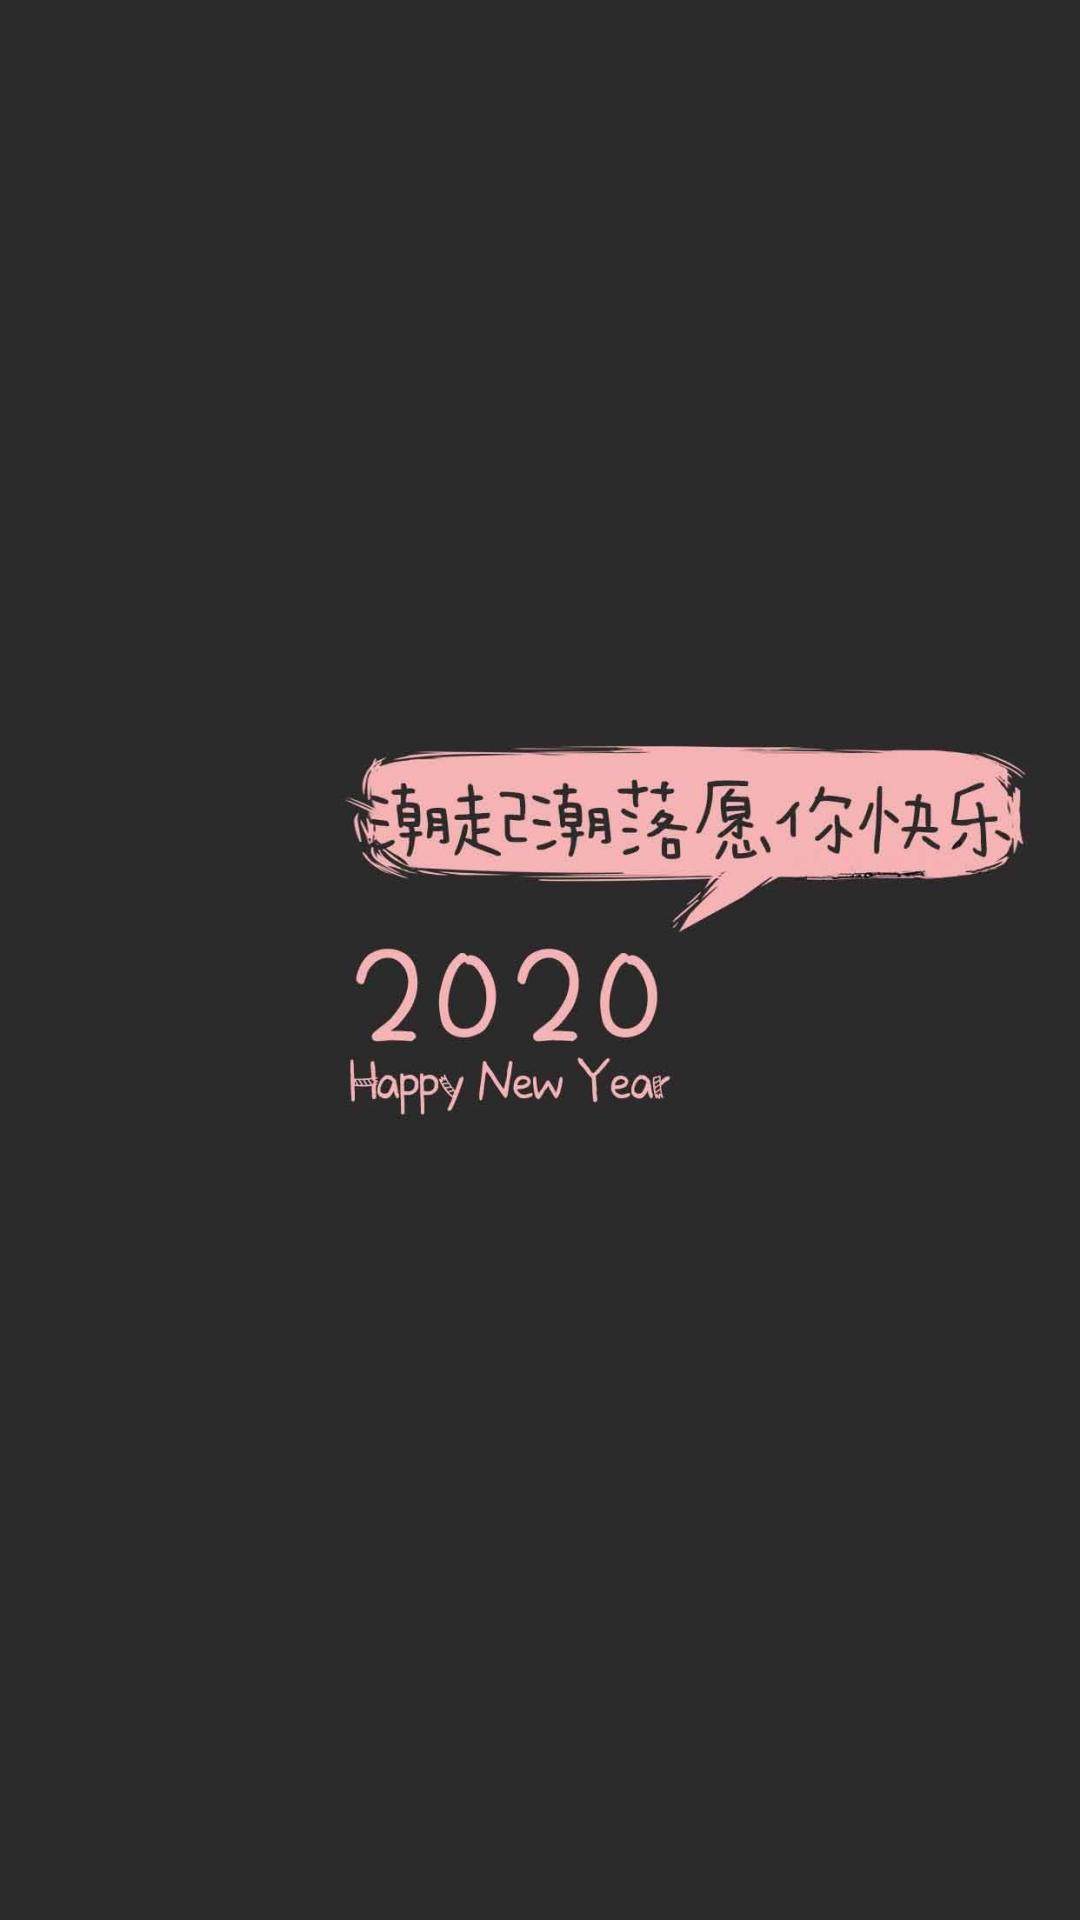 2020年:潮起潮落,愿你快乐